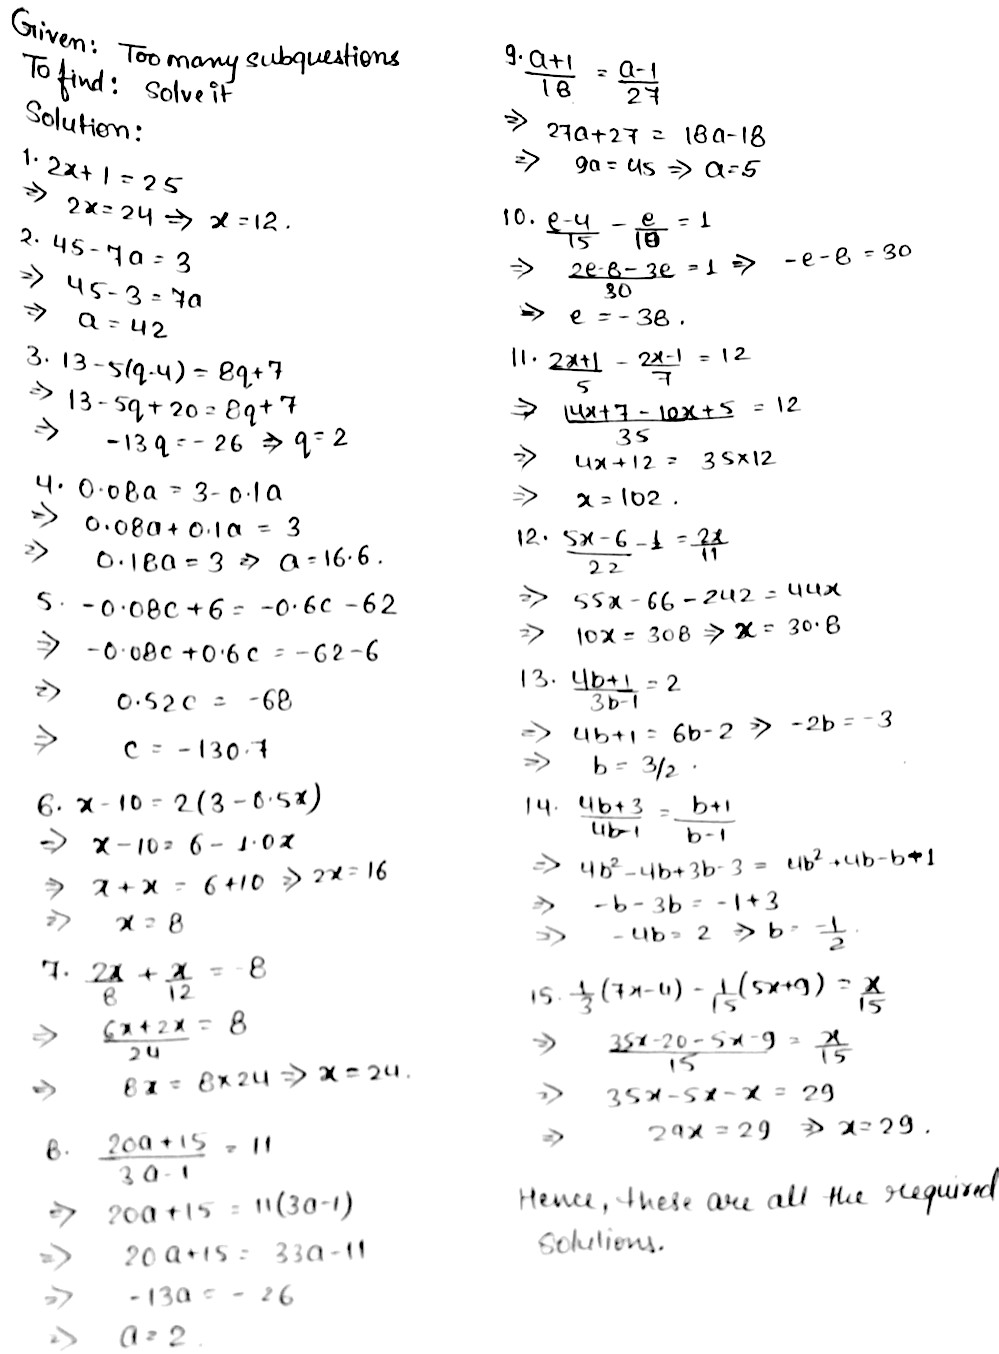 Solve The Following Equations 1 2x 1 25 2 48 7a 3 3 13 5 Q 4 8q 74 0 08a 3 0 1a 5 0 08c 6 0 6c 62 6 X 10 2 3 0 5x 7 Frac 2x 8 Frac X 12 8 Frac a 15 3a 1 11frac A 1 18 Frac A 1 27 19 11 Frac 2x 1 5 Frac 2x 1 7 12 12